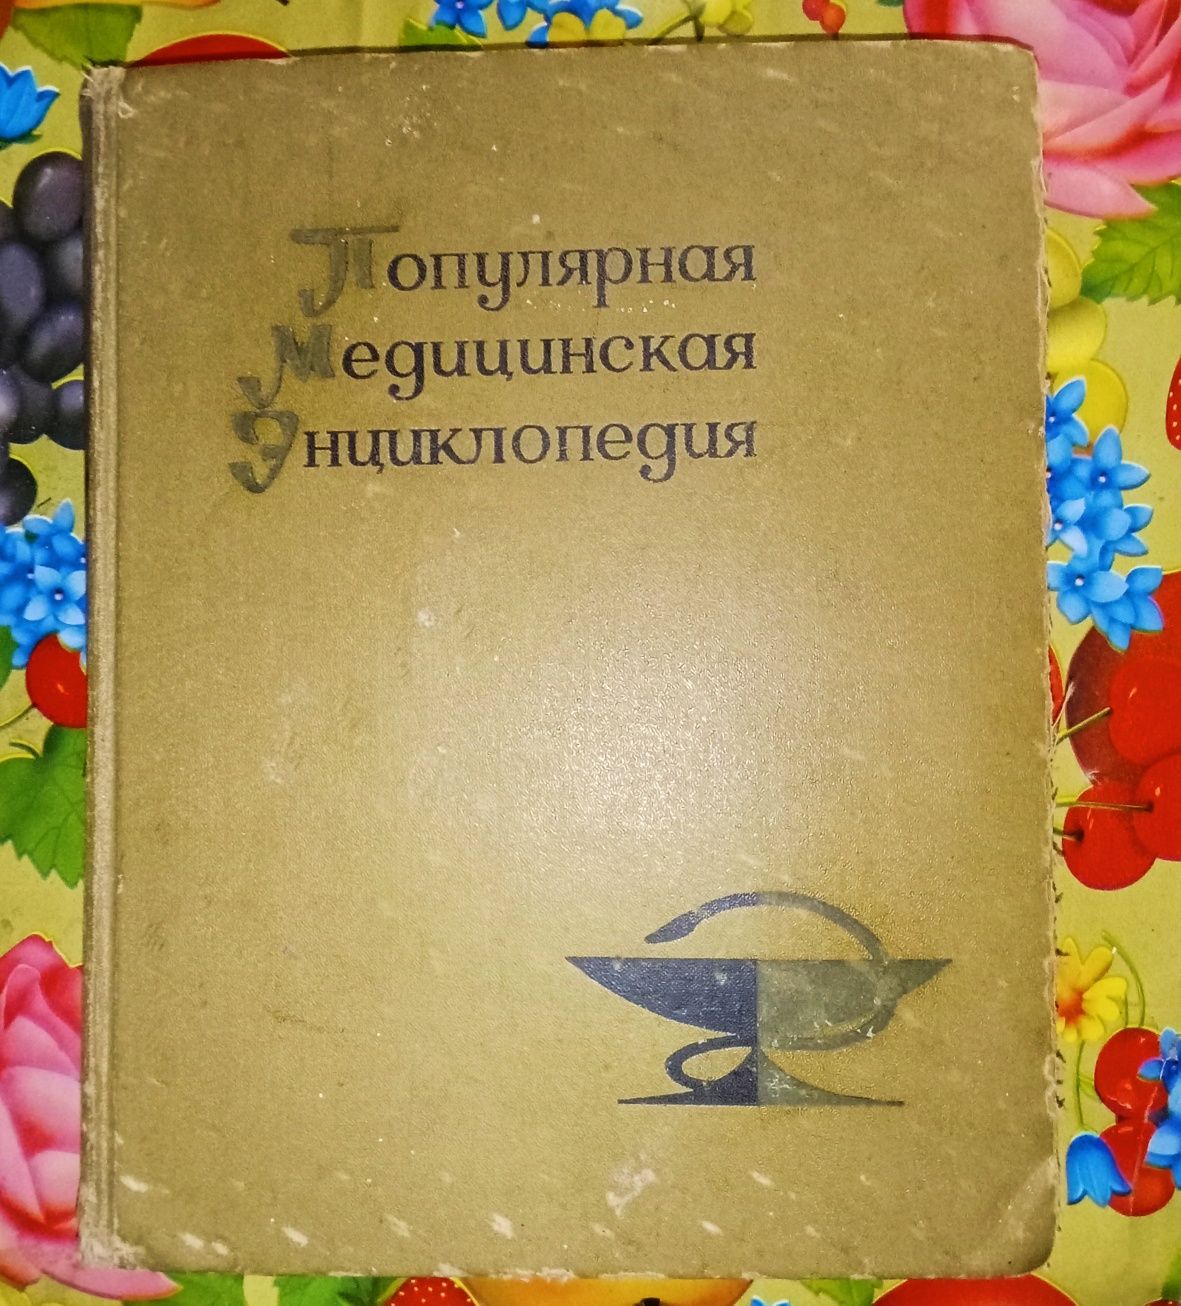 Продам книгу Популярная медицинская энциклопедия.